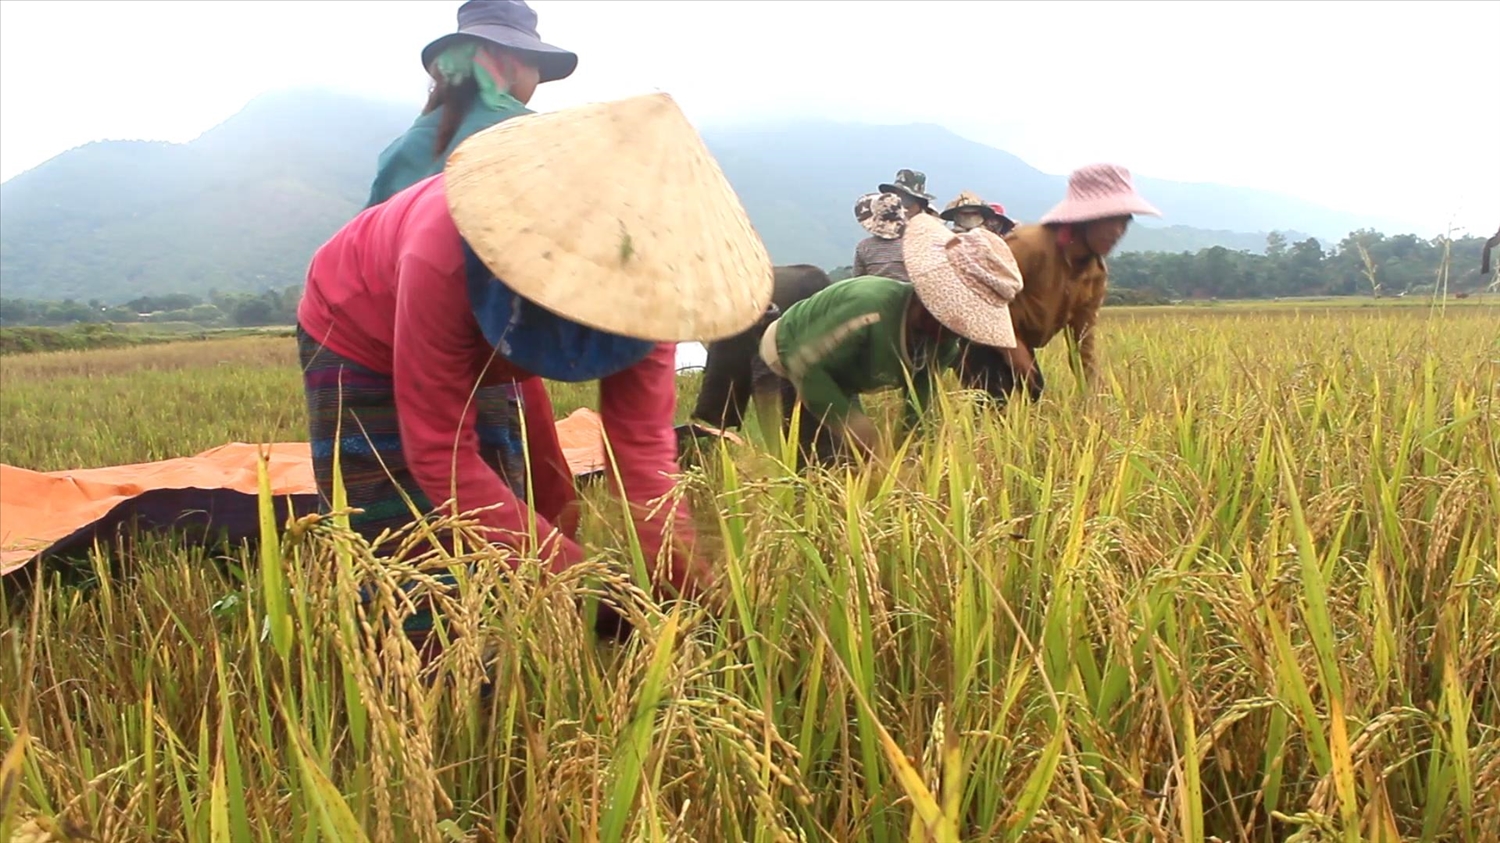 (Bài Kế Hoạch)Trồng lúa chất lượng cao, chuyện thiếu gạo mùa giáp hạt lùi vào dĩ vãng 2